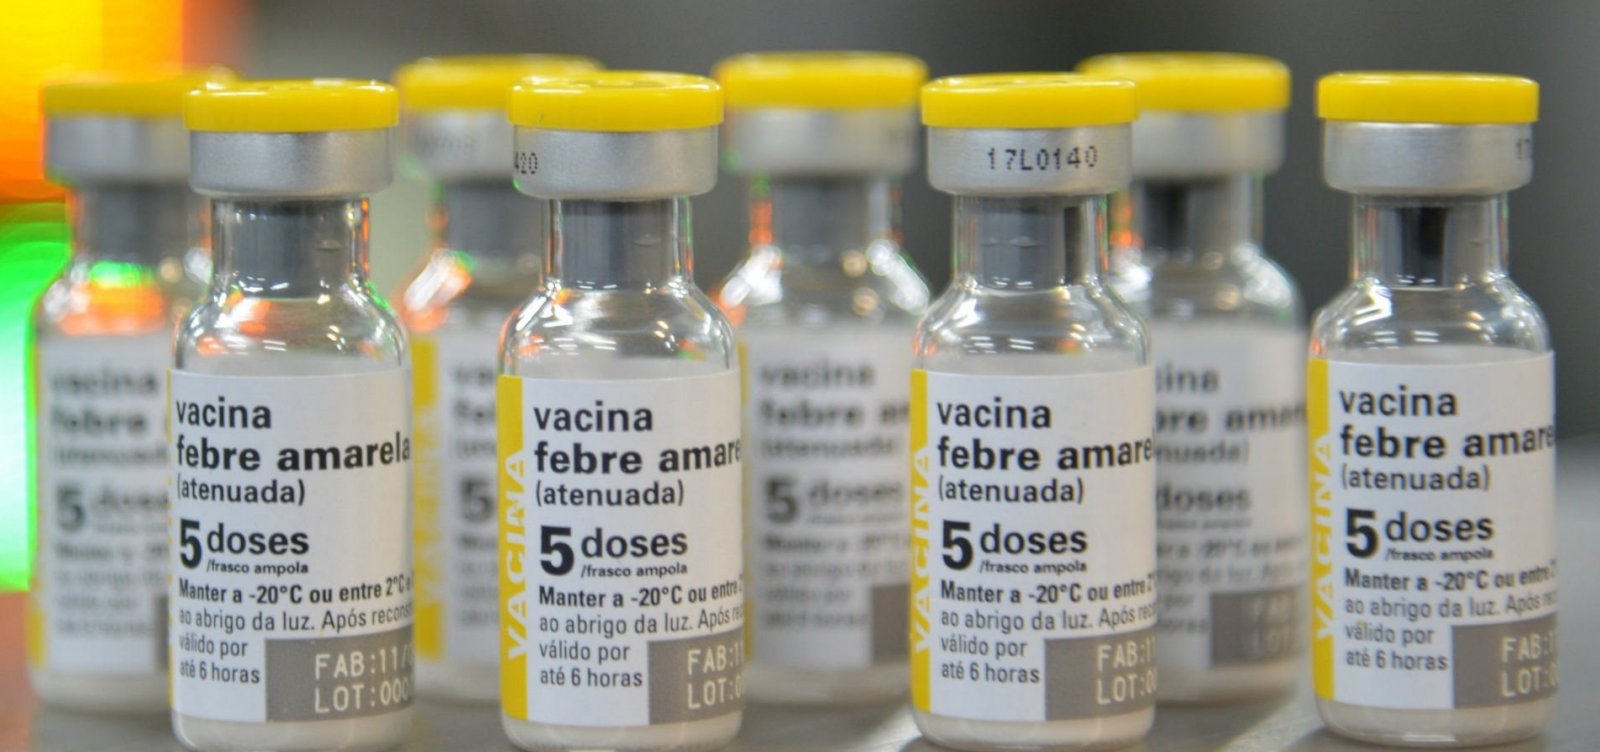 Brasil tem 415 mortes confirmadas por febre amarela